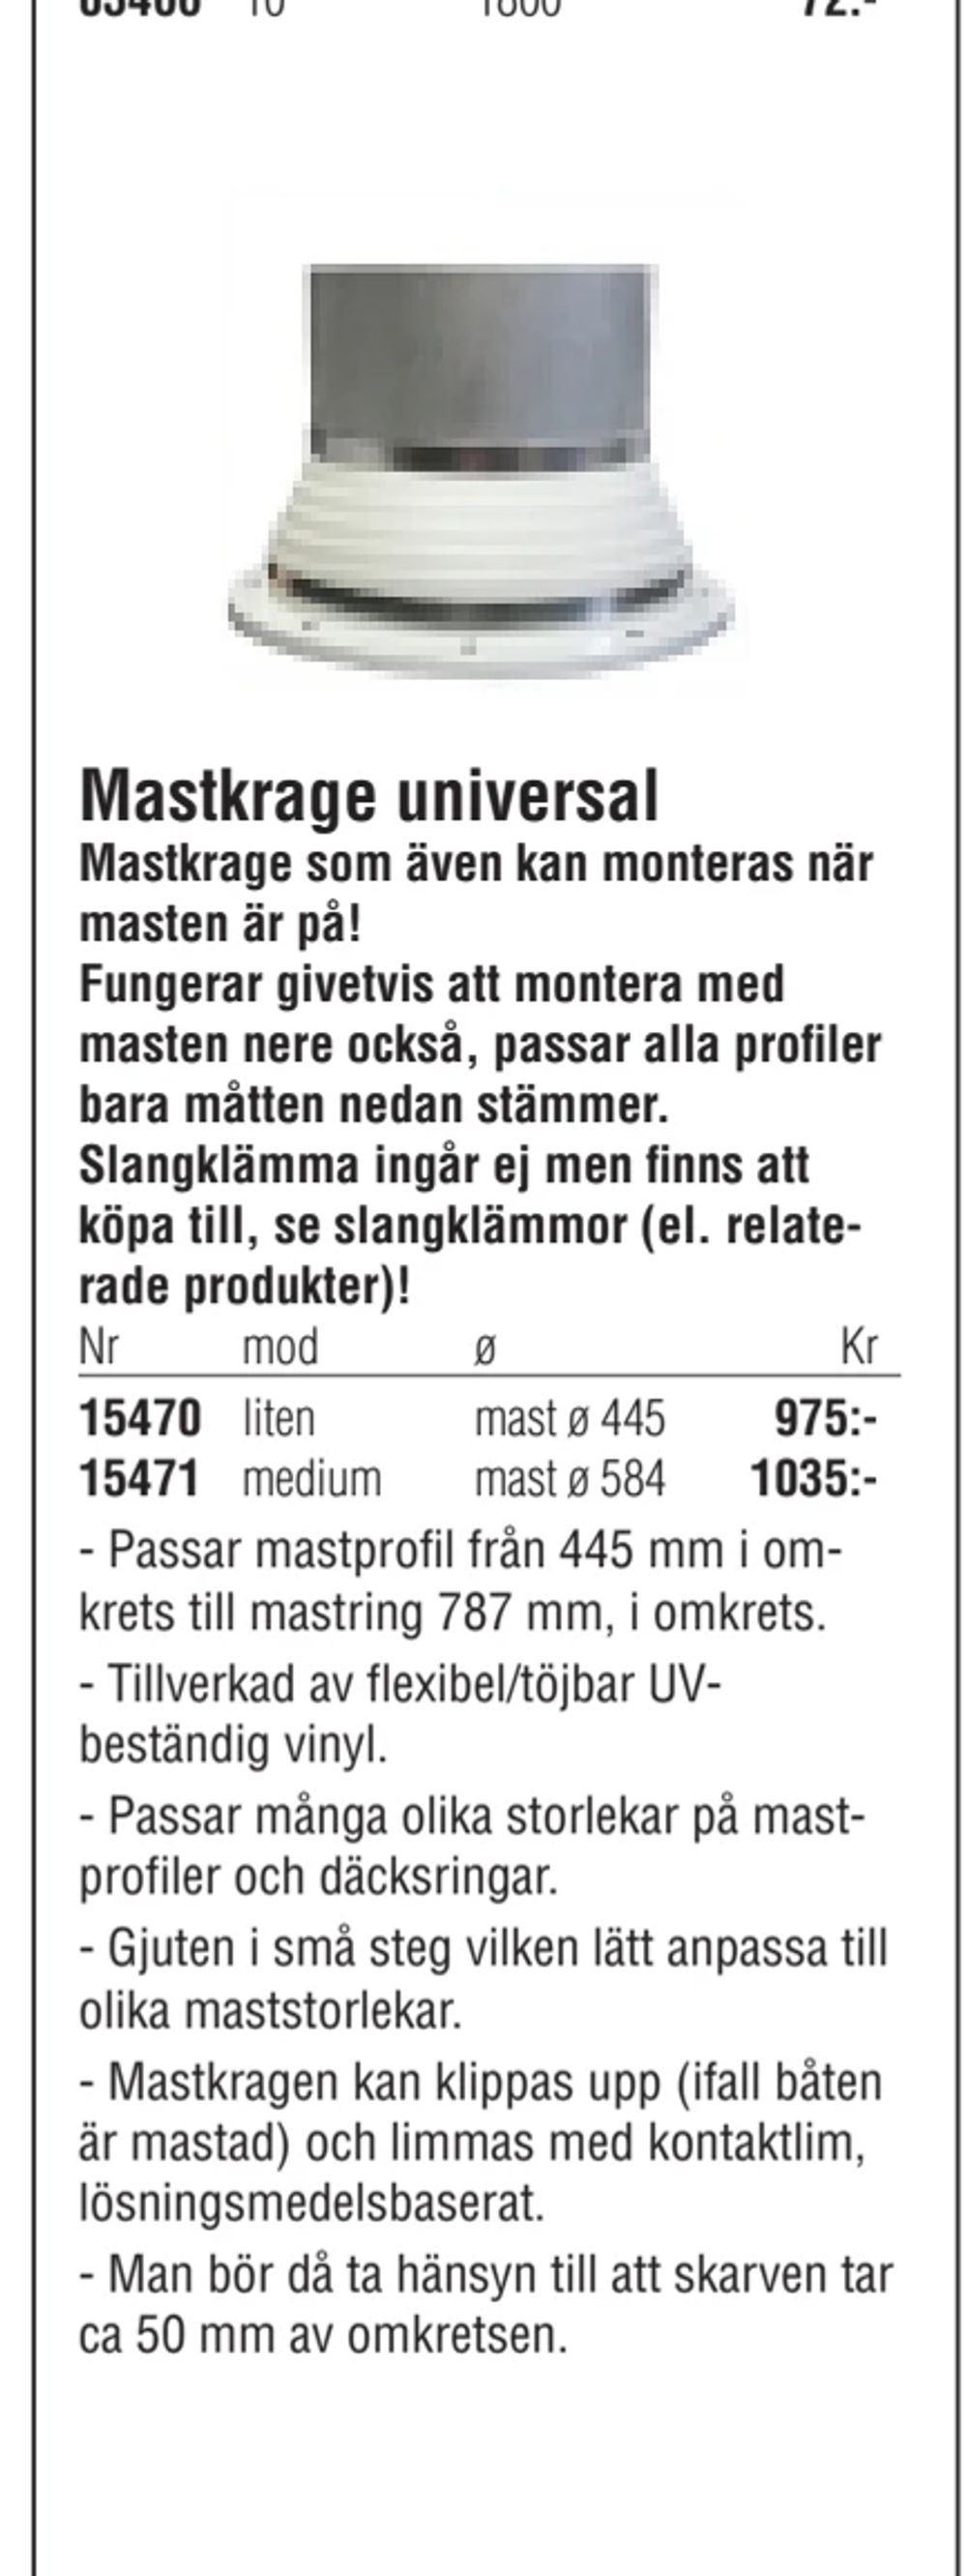 Erbjudanden på Mastkrage universal från Erlandsons Brygga för 975 kr